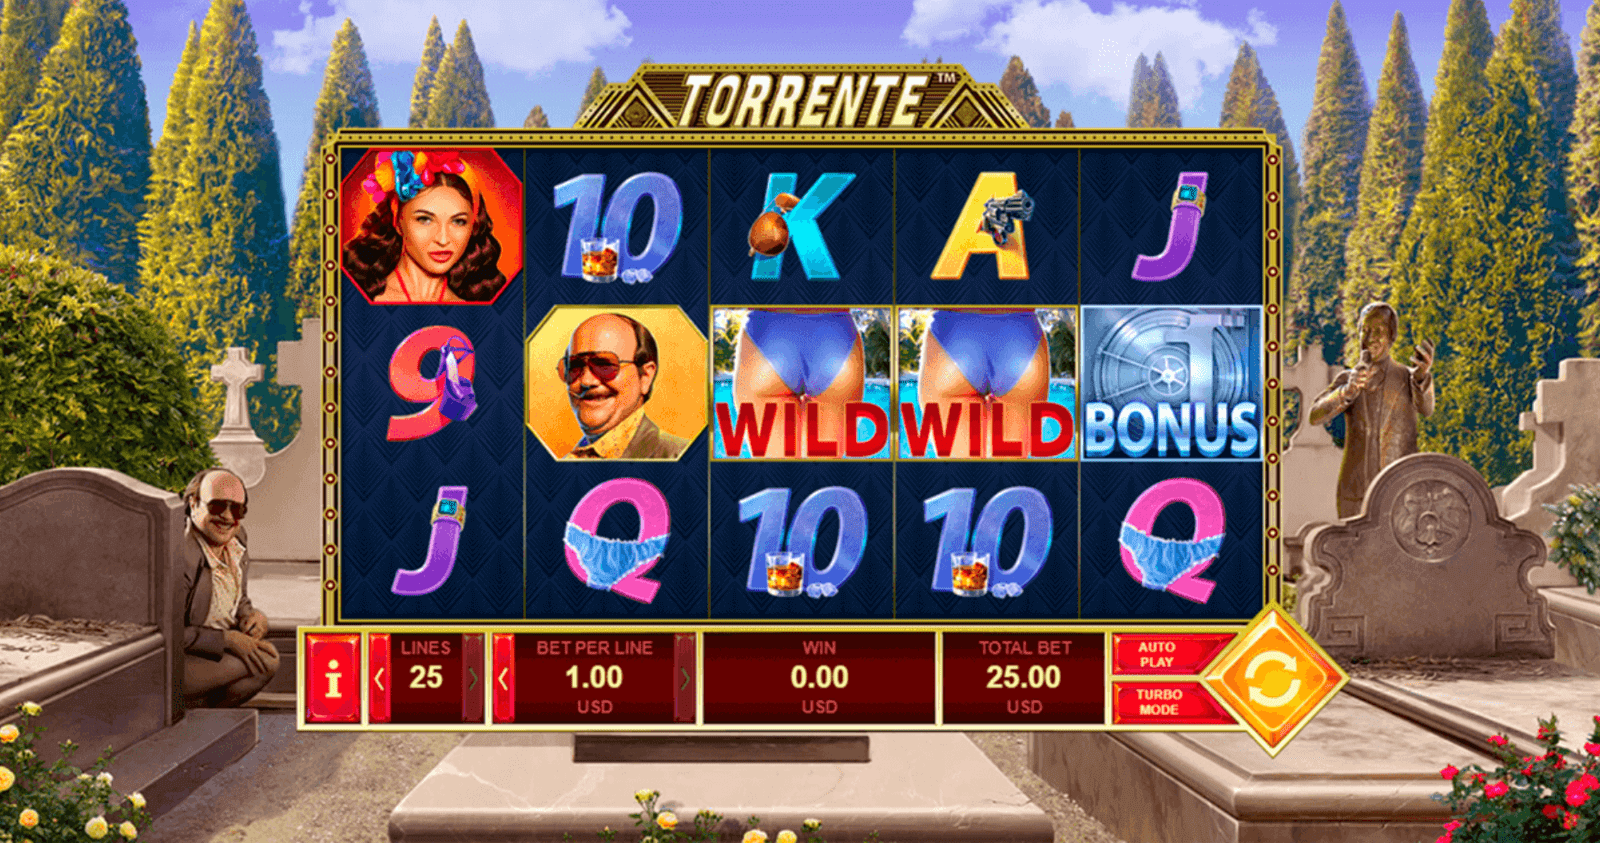 Jugar a la tragamonedas gratis Torrente de Playtech en casinos online